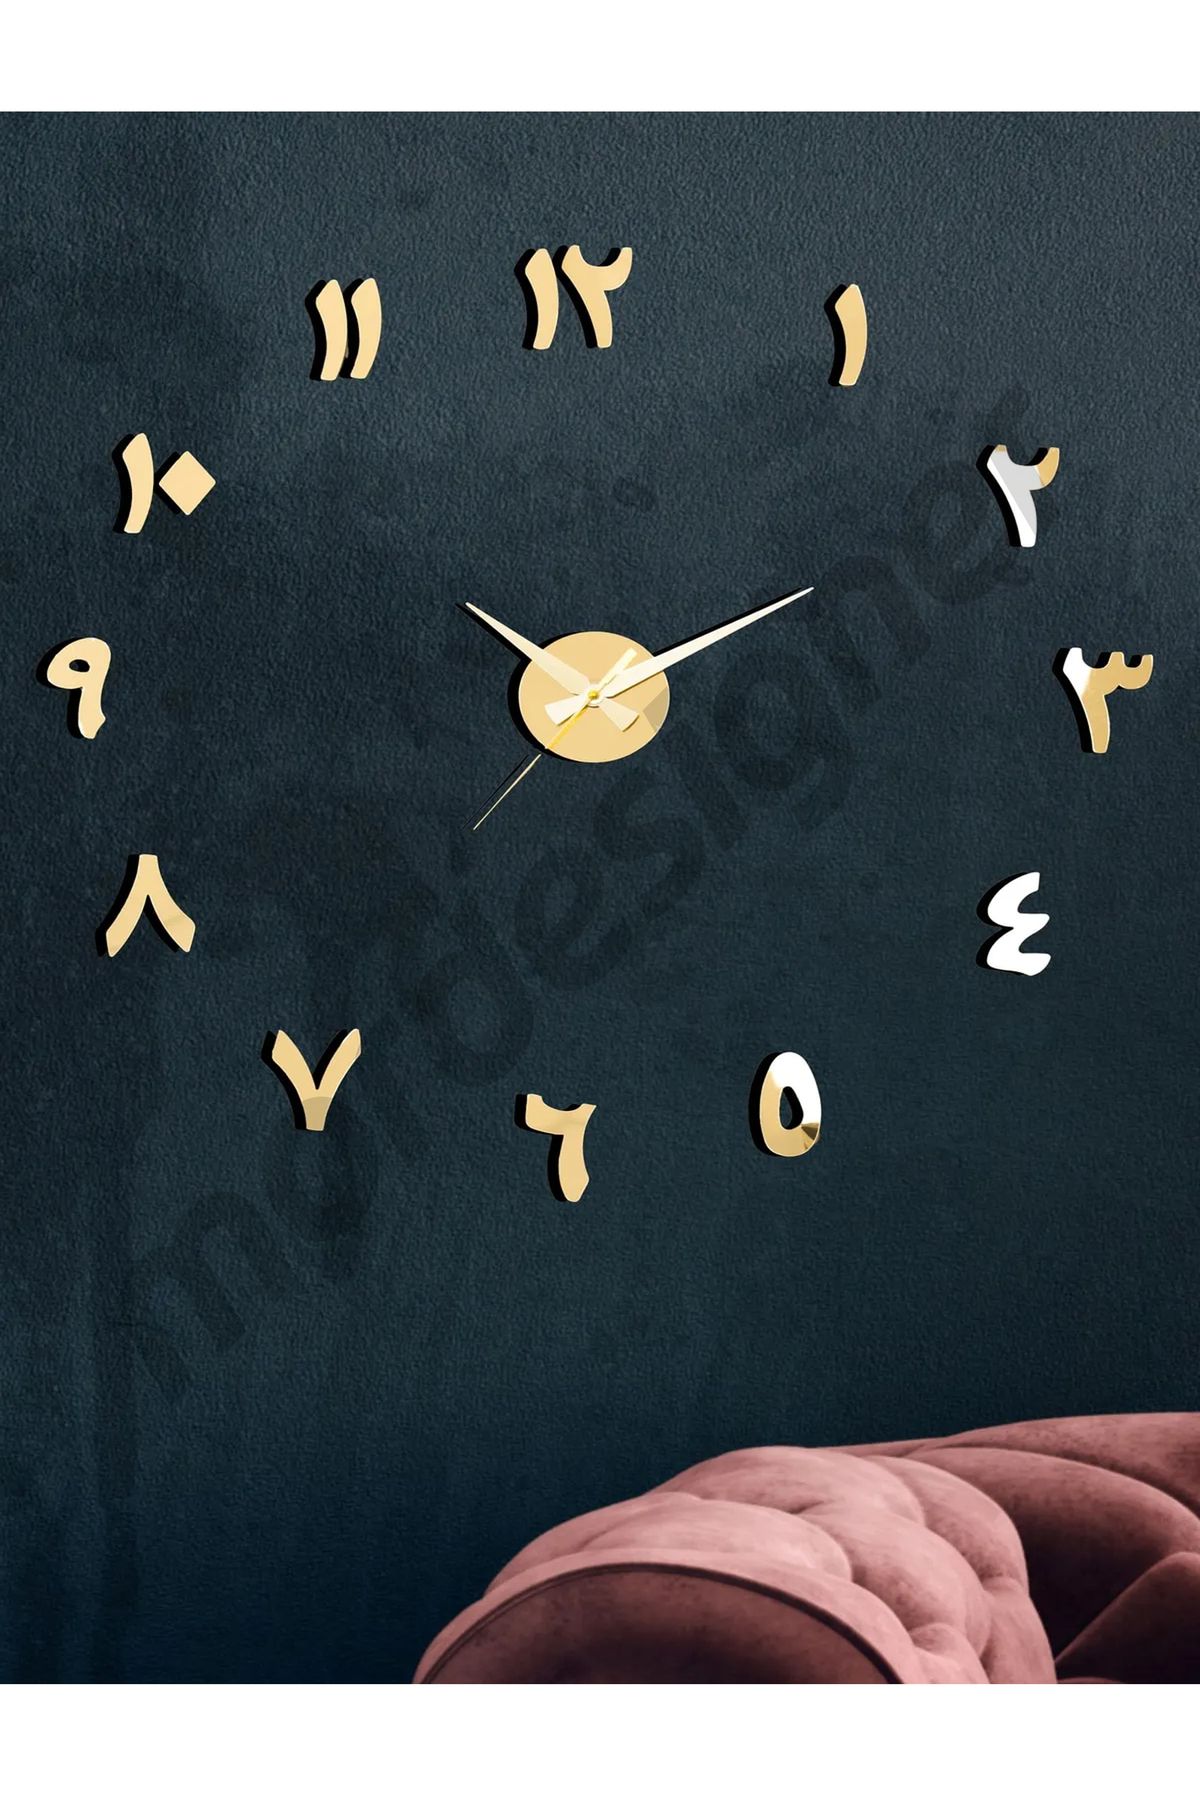 Mor Designer 3D Arapça Rakamlı Duvar Saati